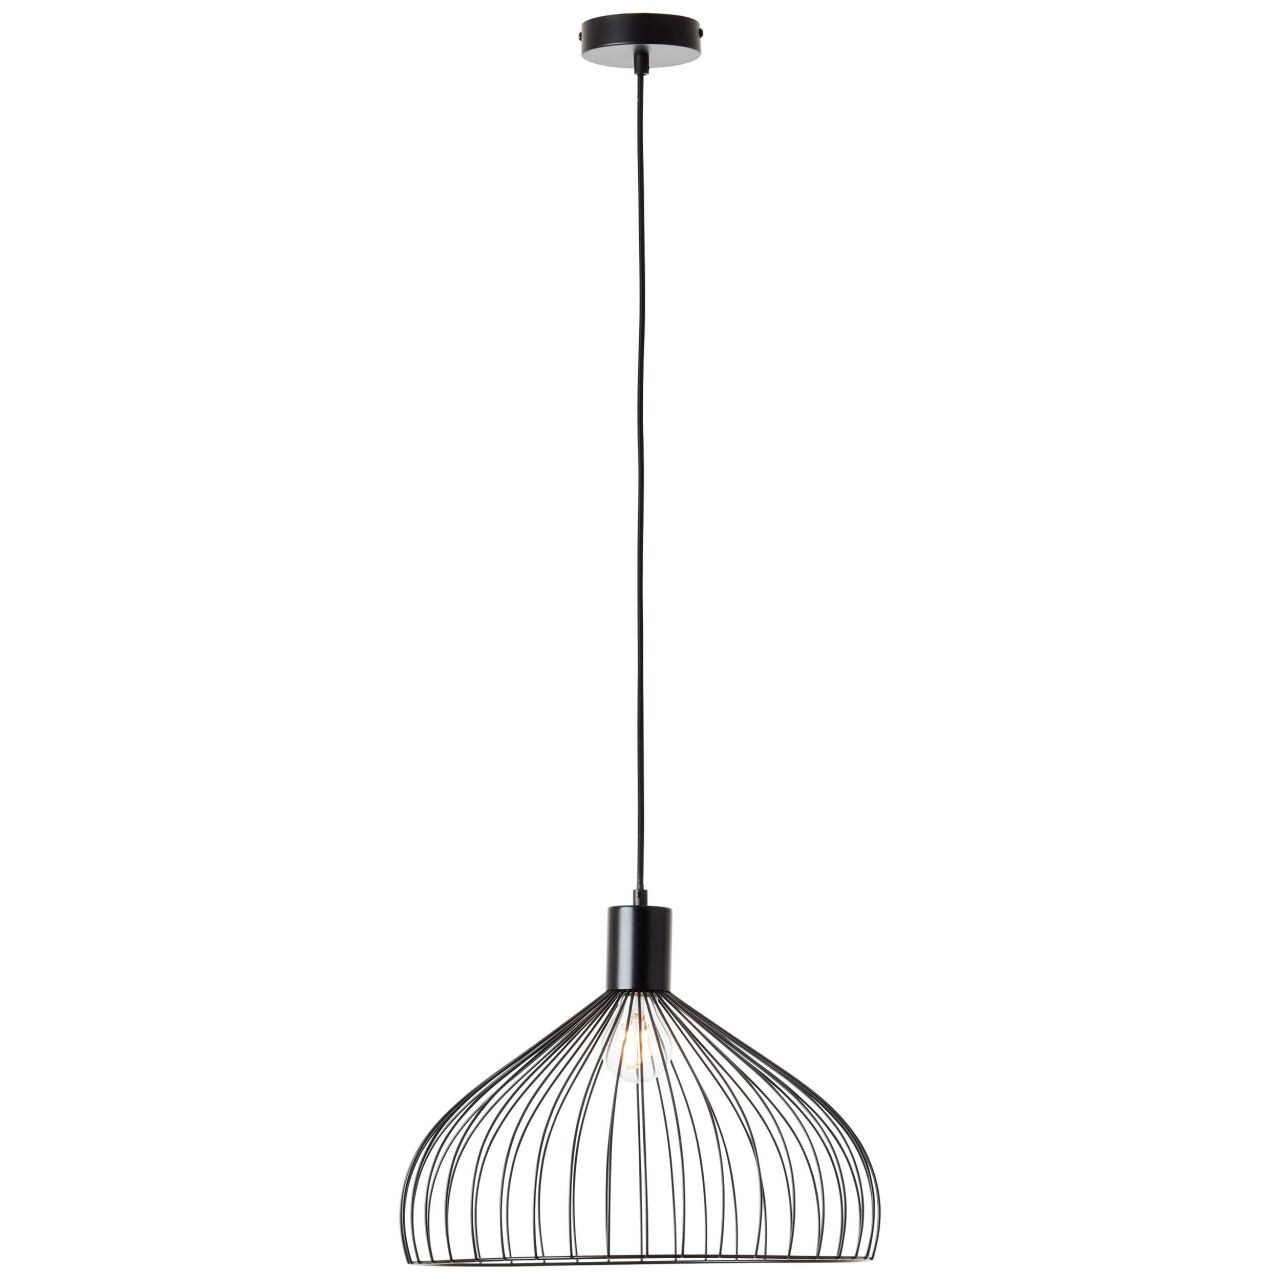 BRILLIANT Lampe, Blacky Pendelleuchte 40cm schwarz matt, 1x A60, E27, 40W, Kabel kürzbar / in der Höhe einstellbar